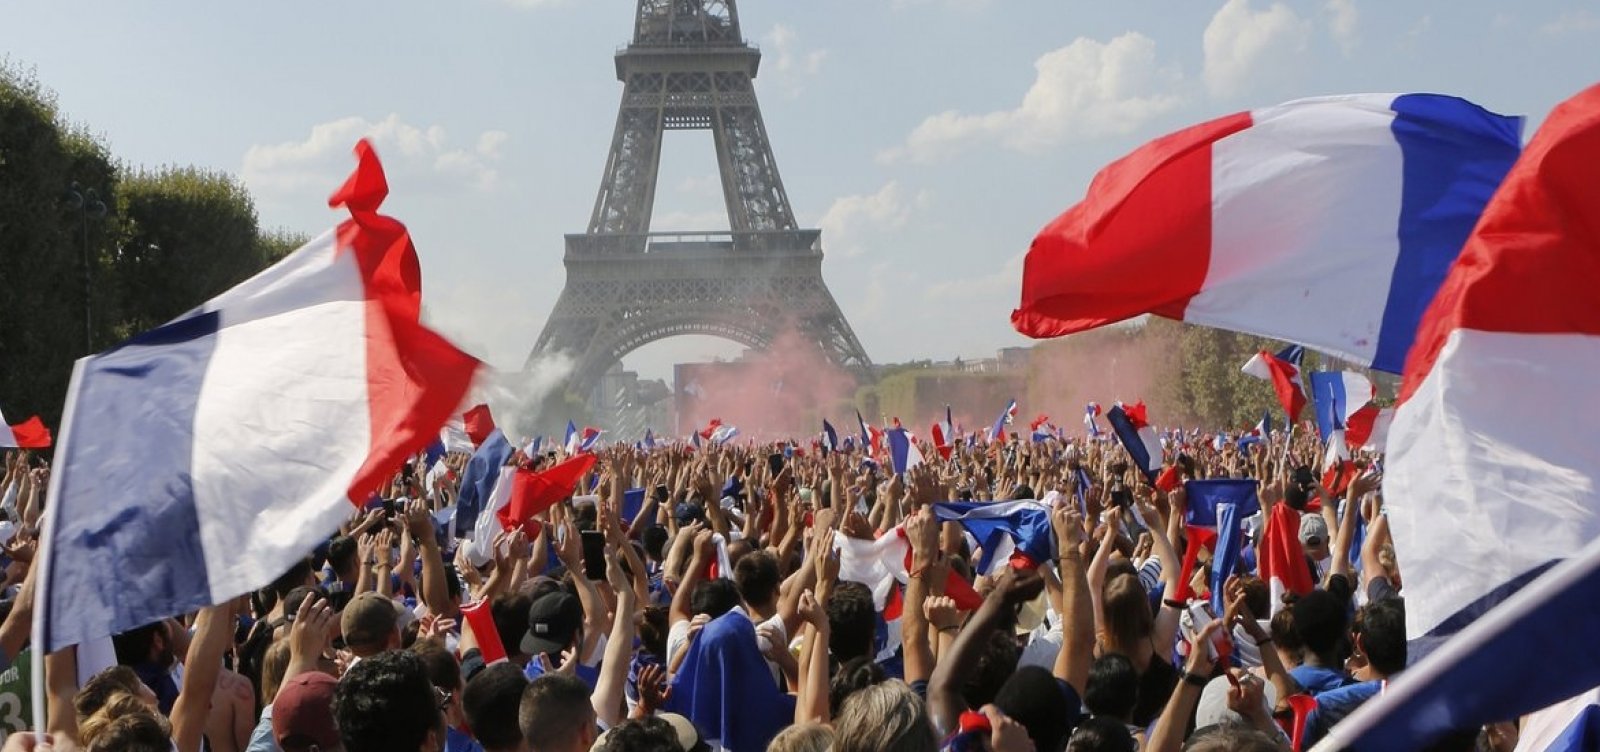 Festa do título da França tem dois mortos e quase 300 detidos